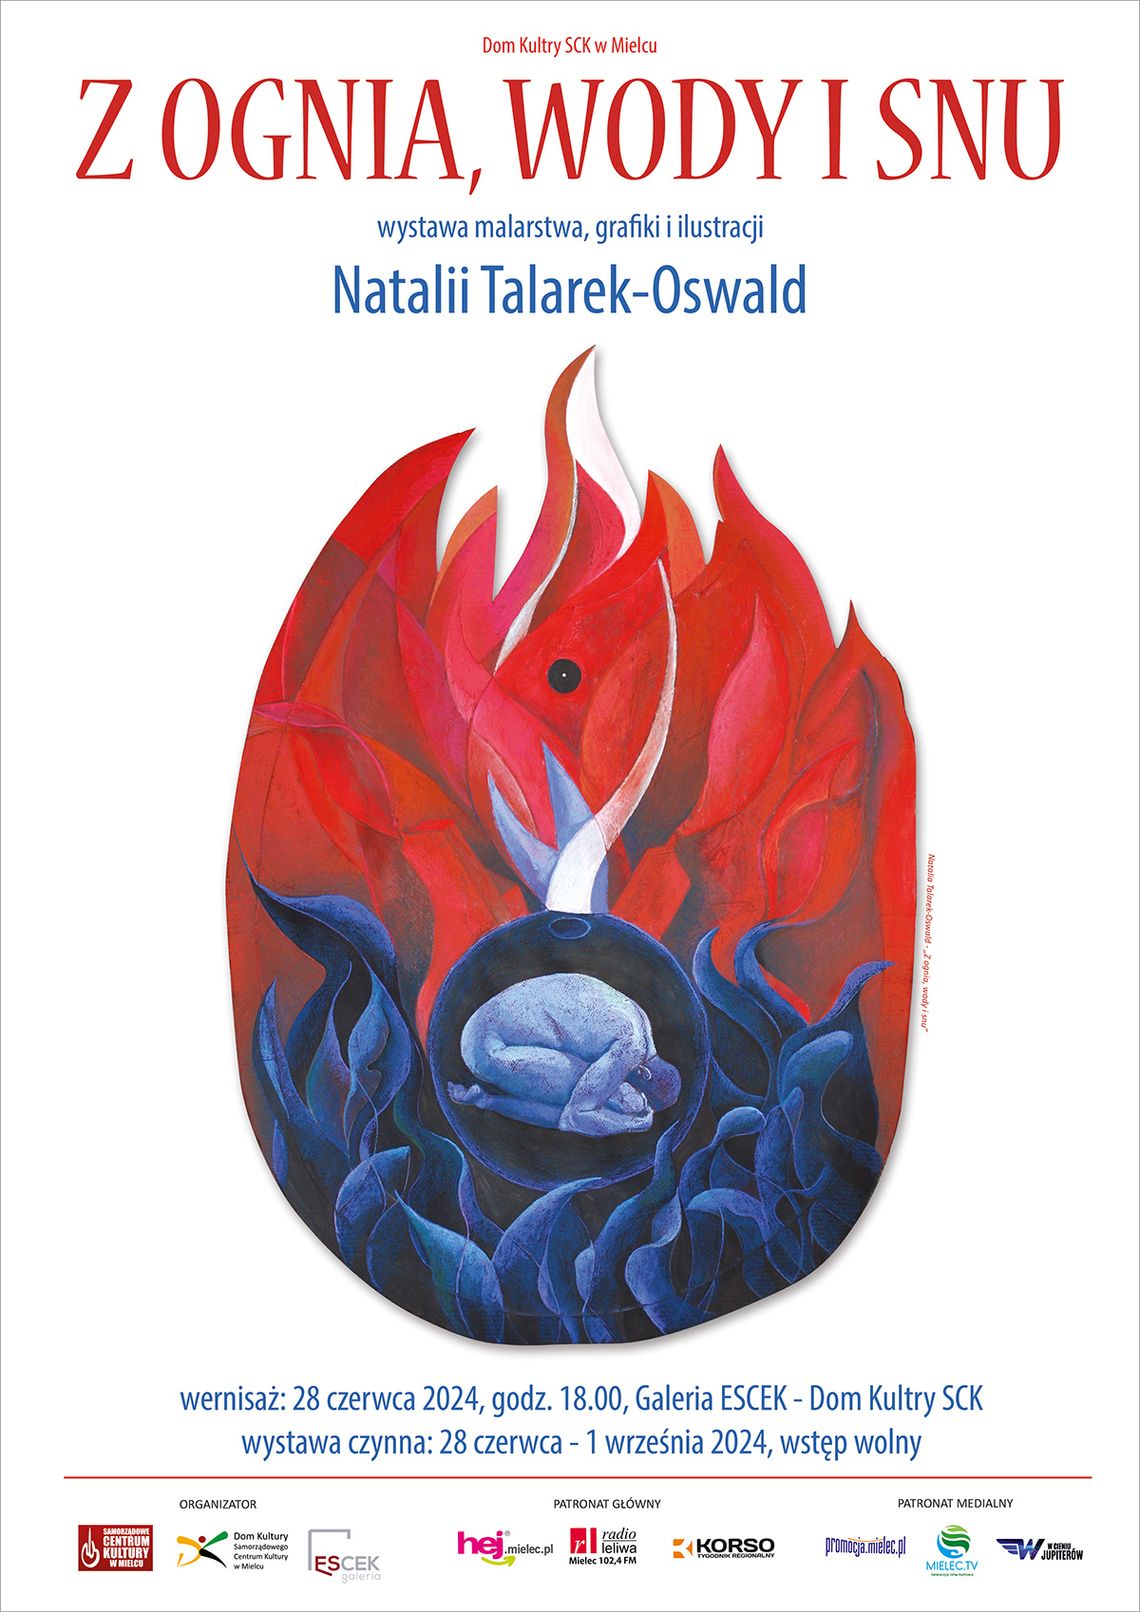 Wystawa "Z ognia, wody i snu" Natalii Talarek-Oswald